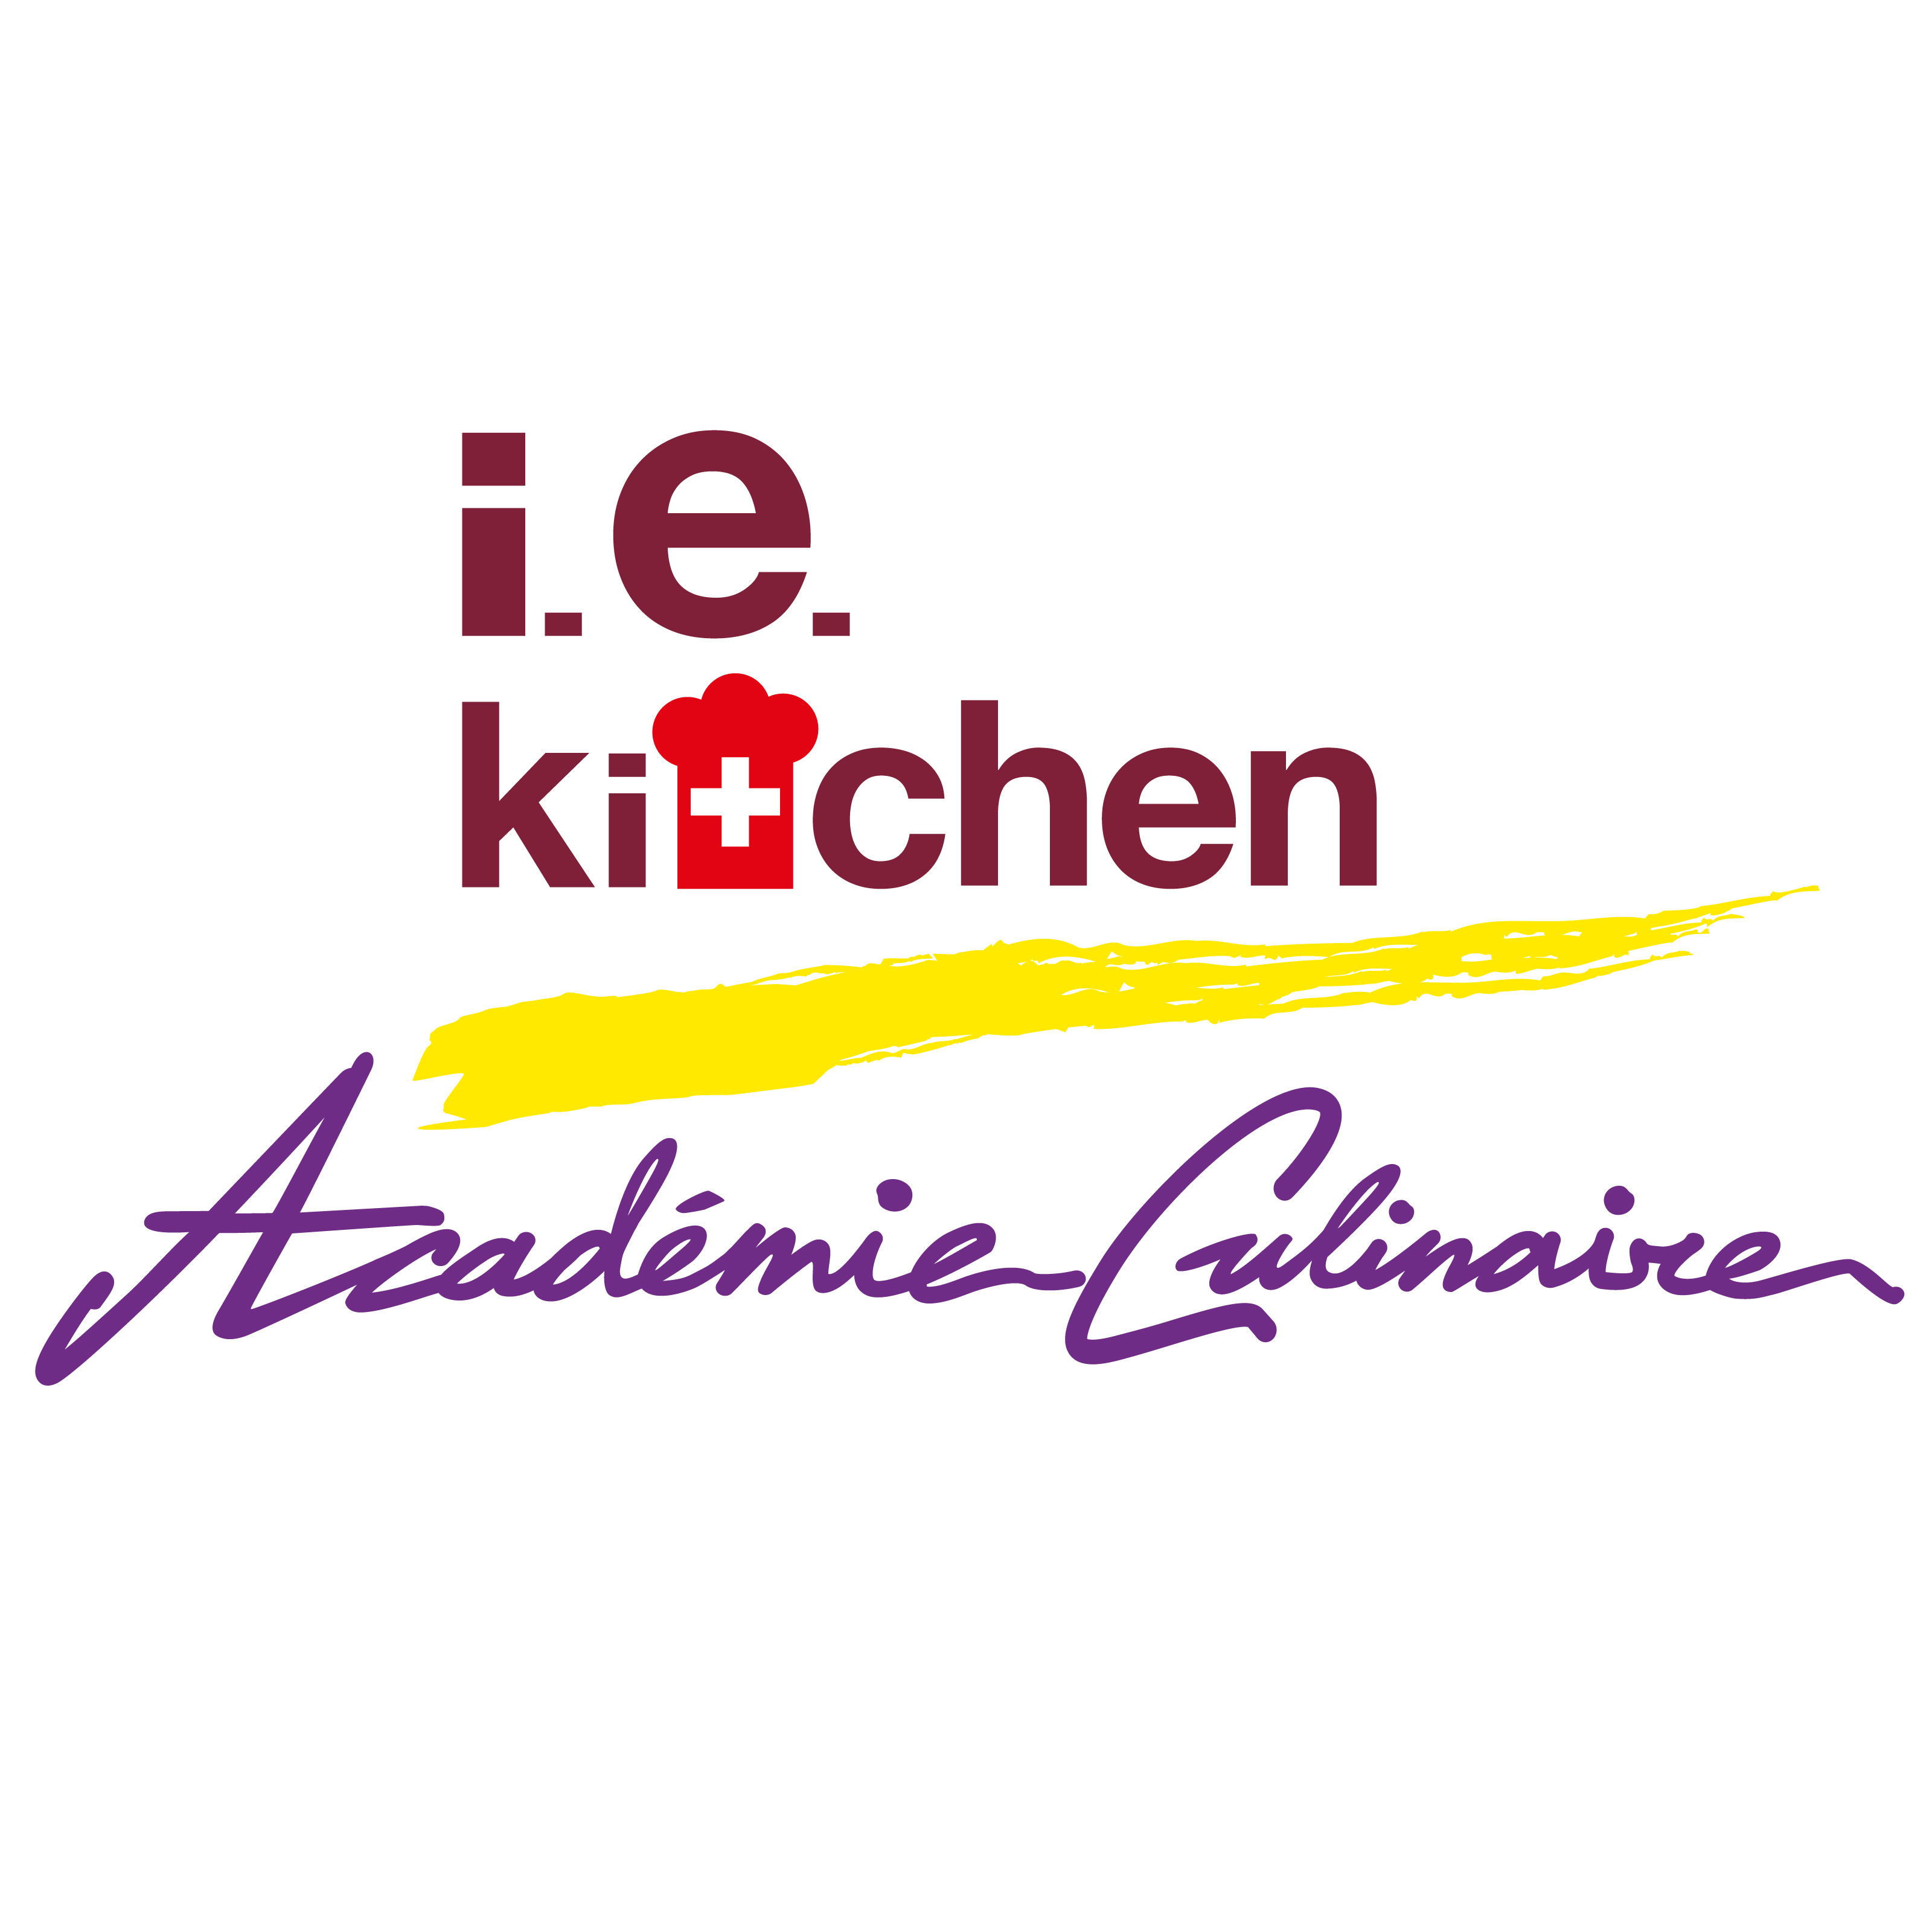 IE Kitchen Academie Culinaire